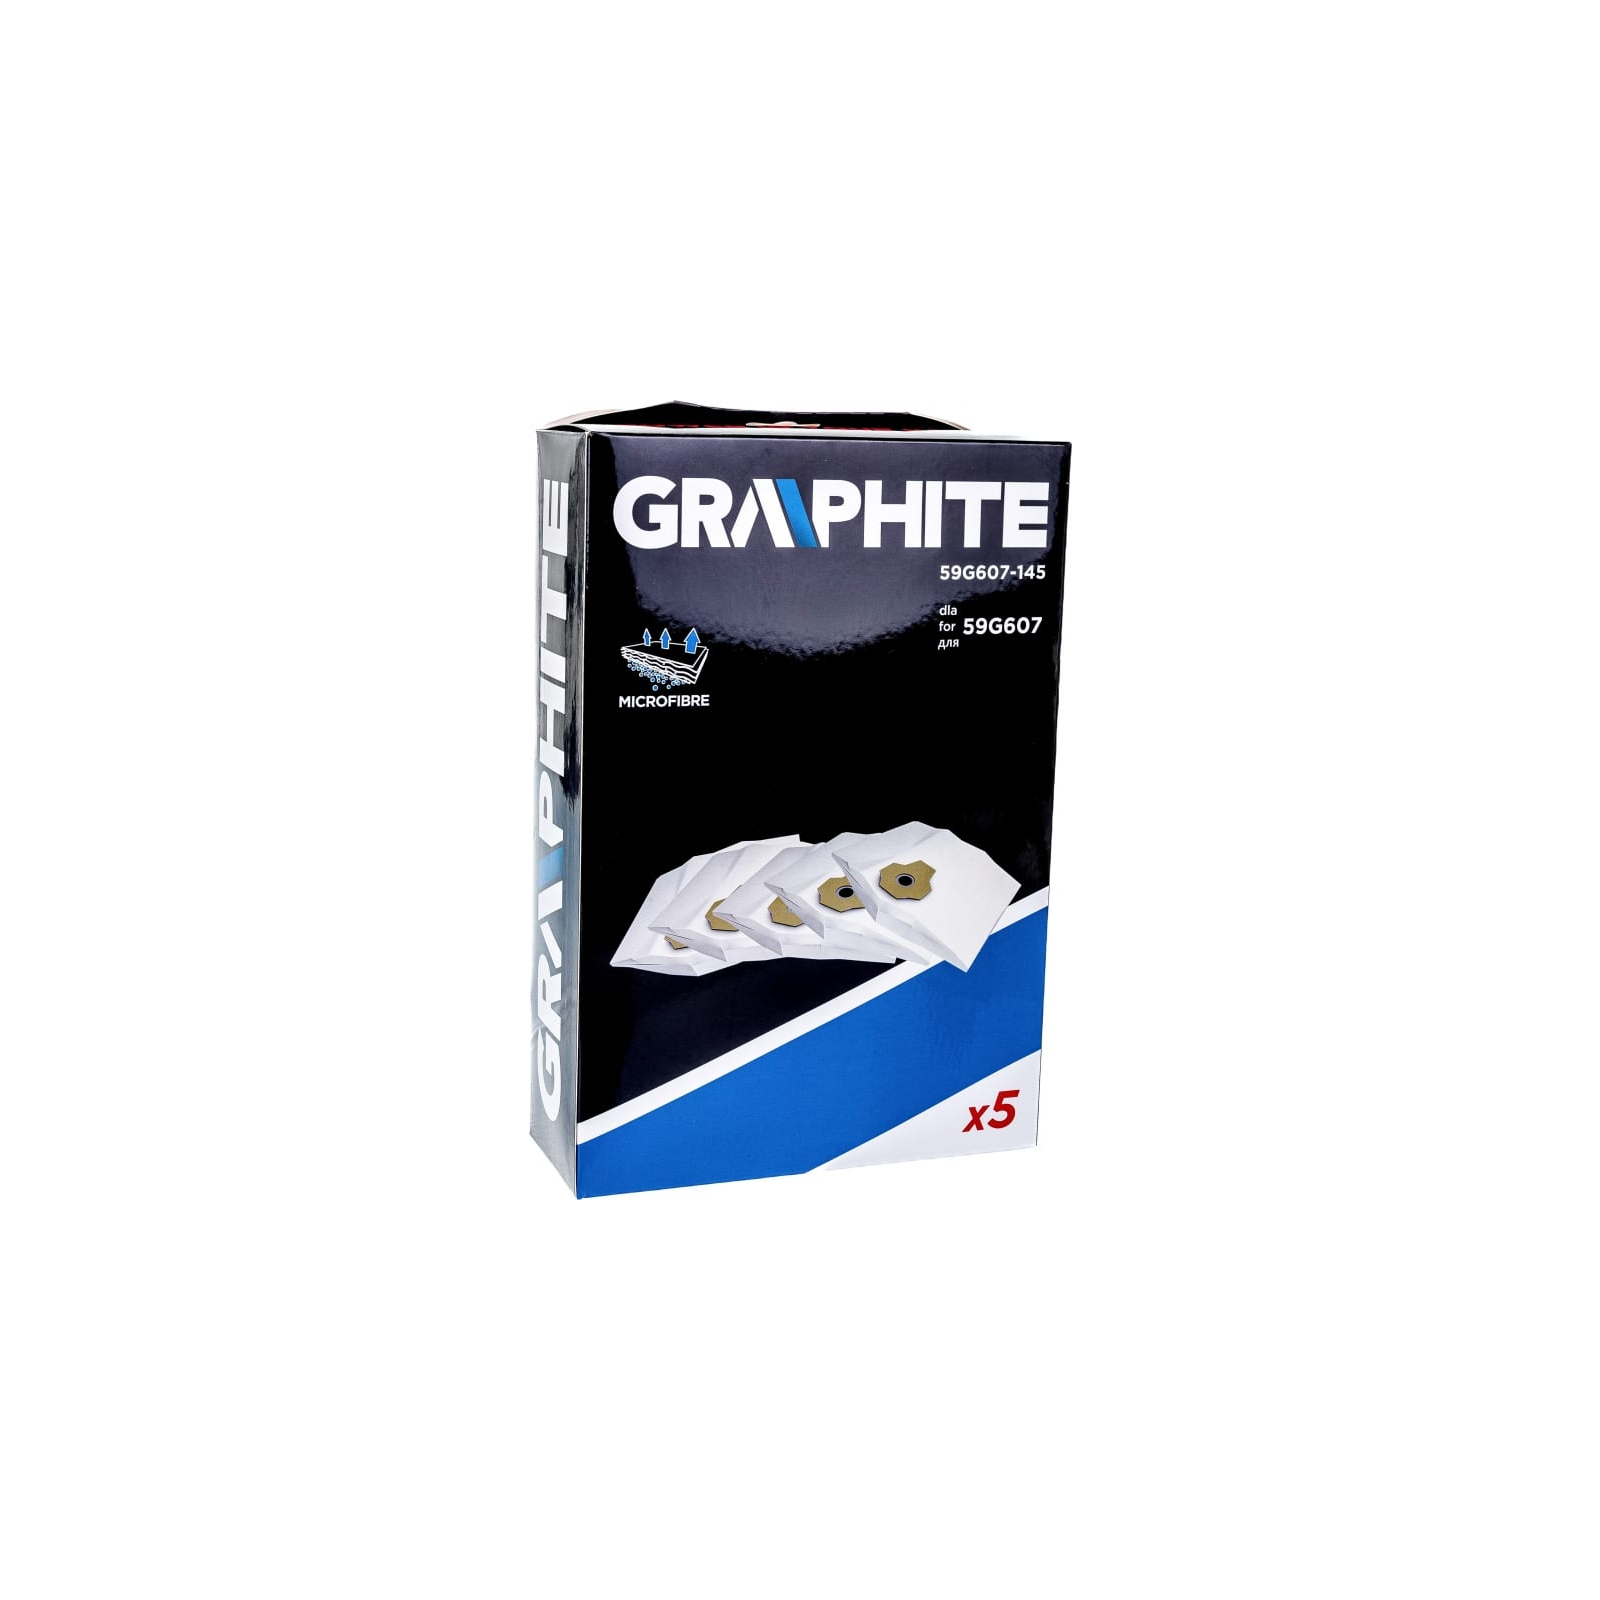 Мешок для пылесоса Graphite мешки для полесоса 59G607, 5 шт (59G607-145) изображение 4